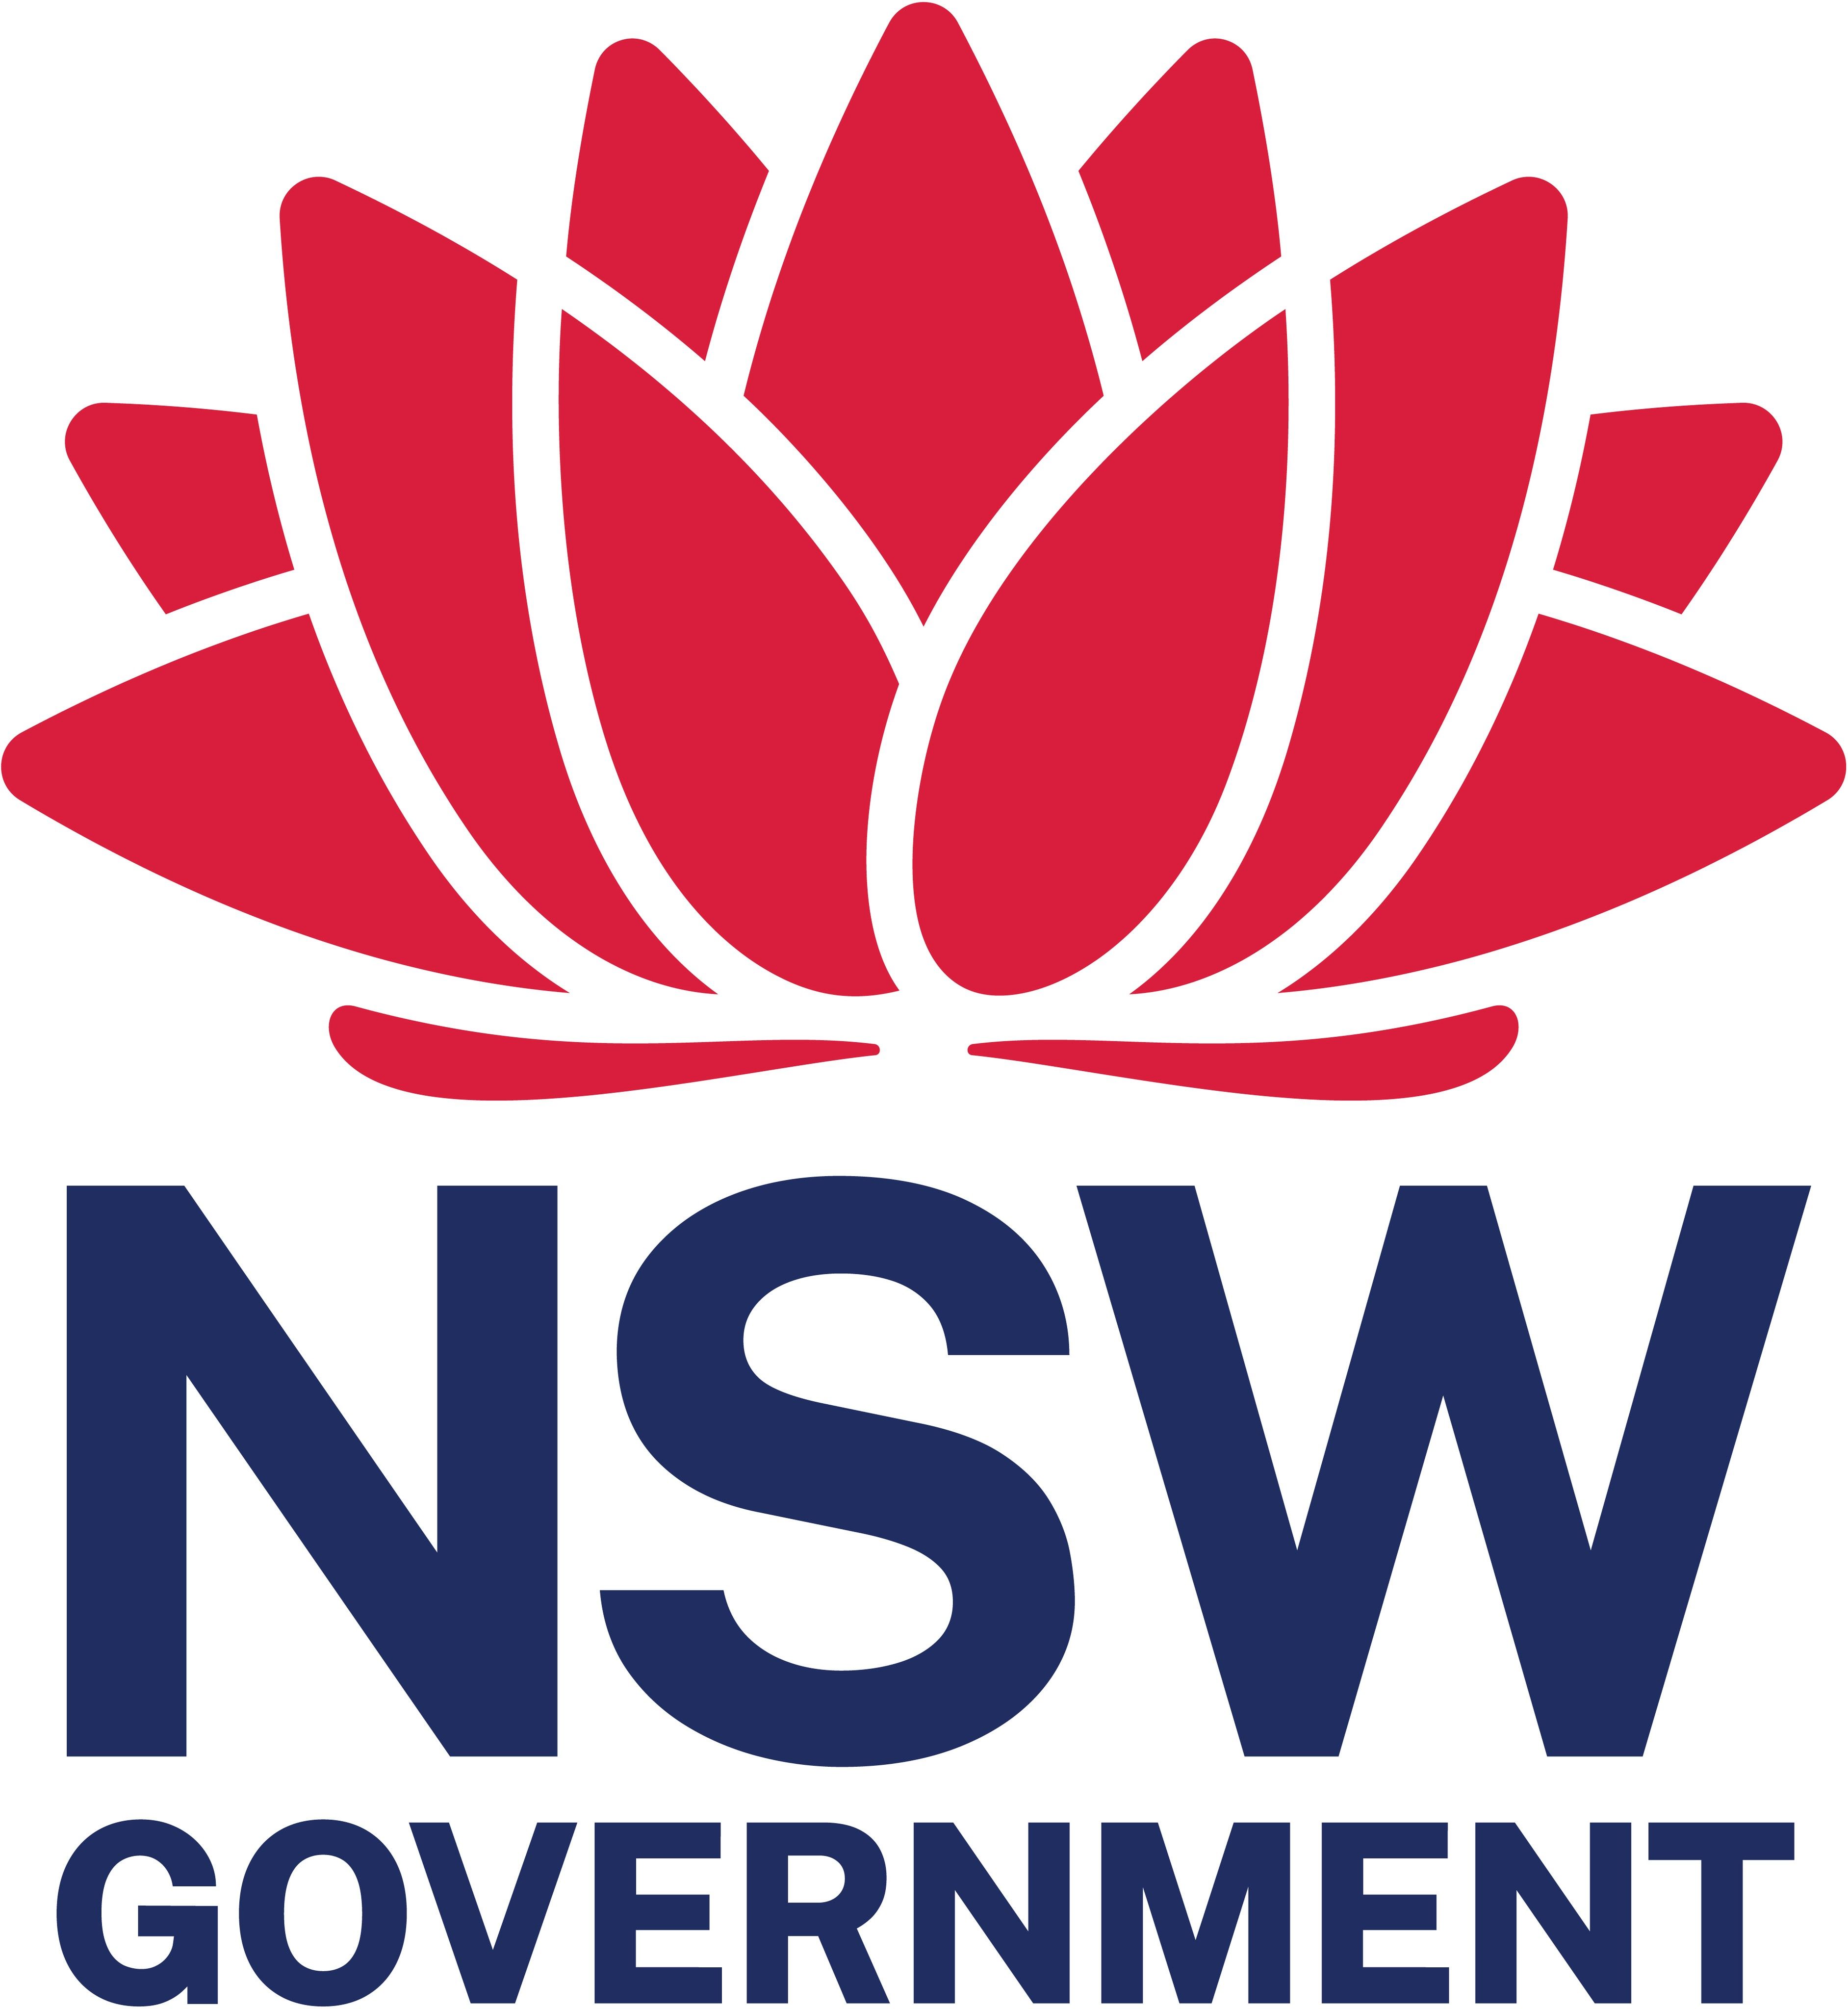 NSW Government waratah colour logo large jpeg file